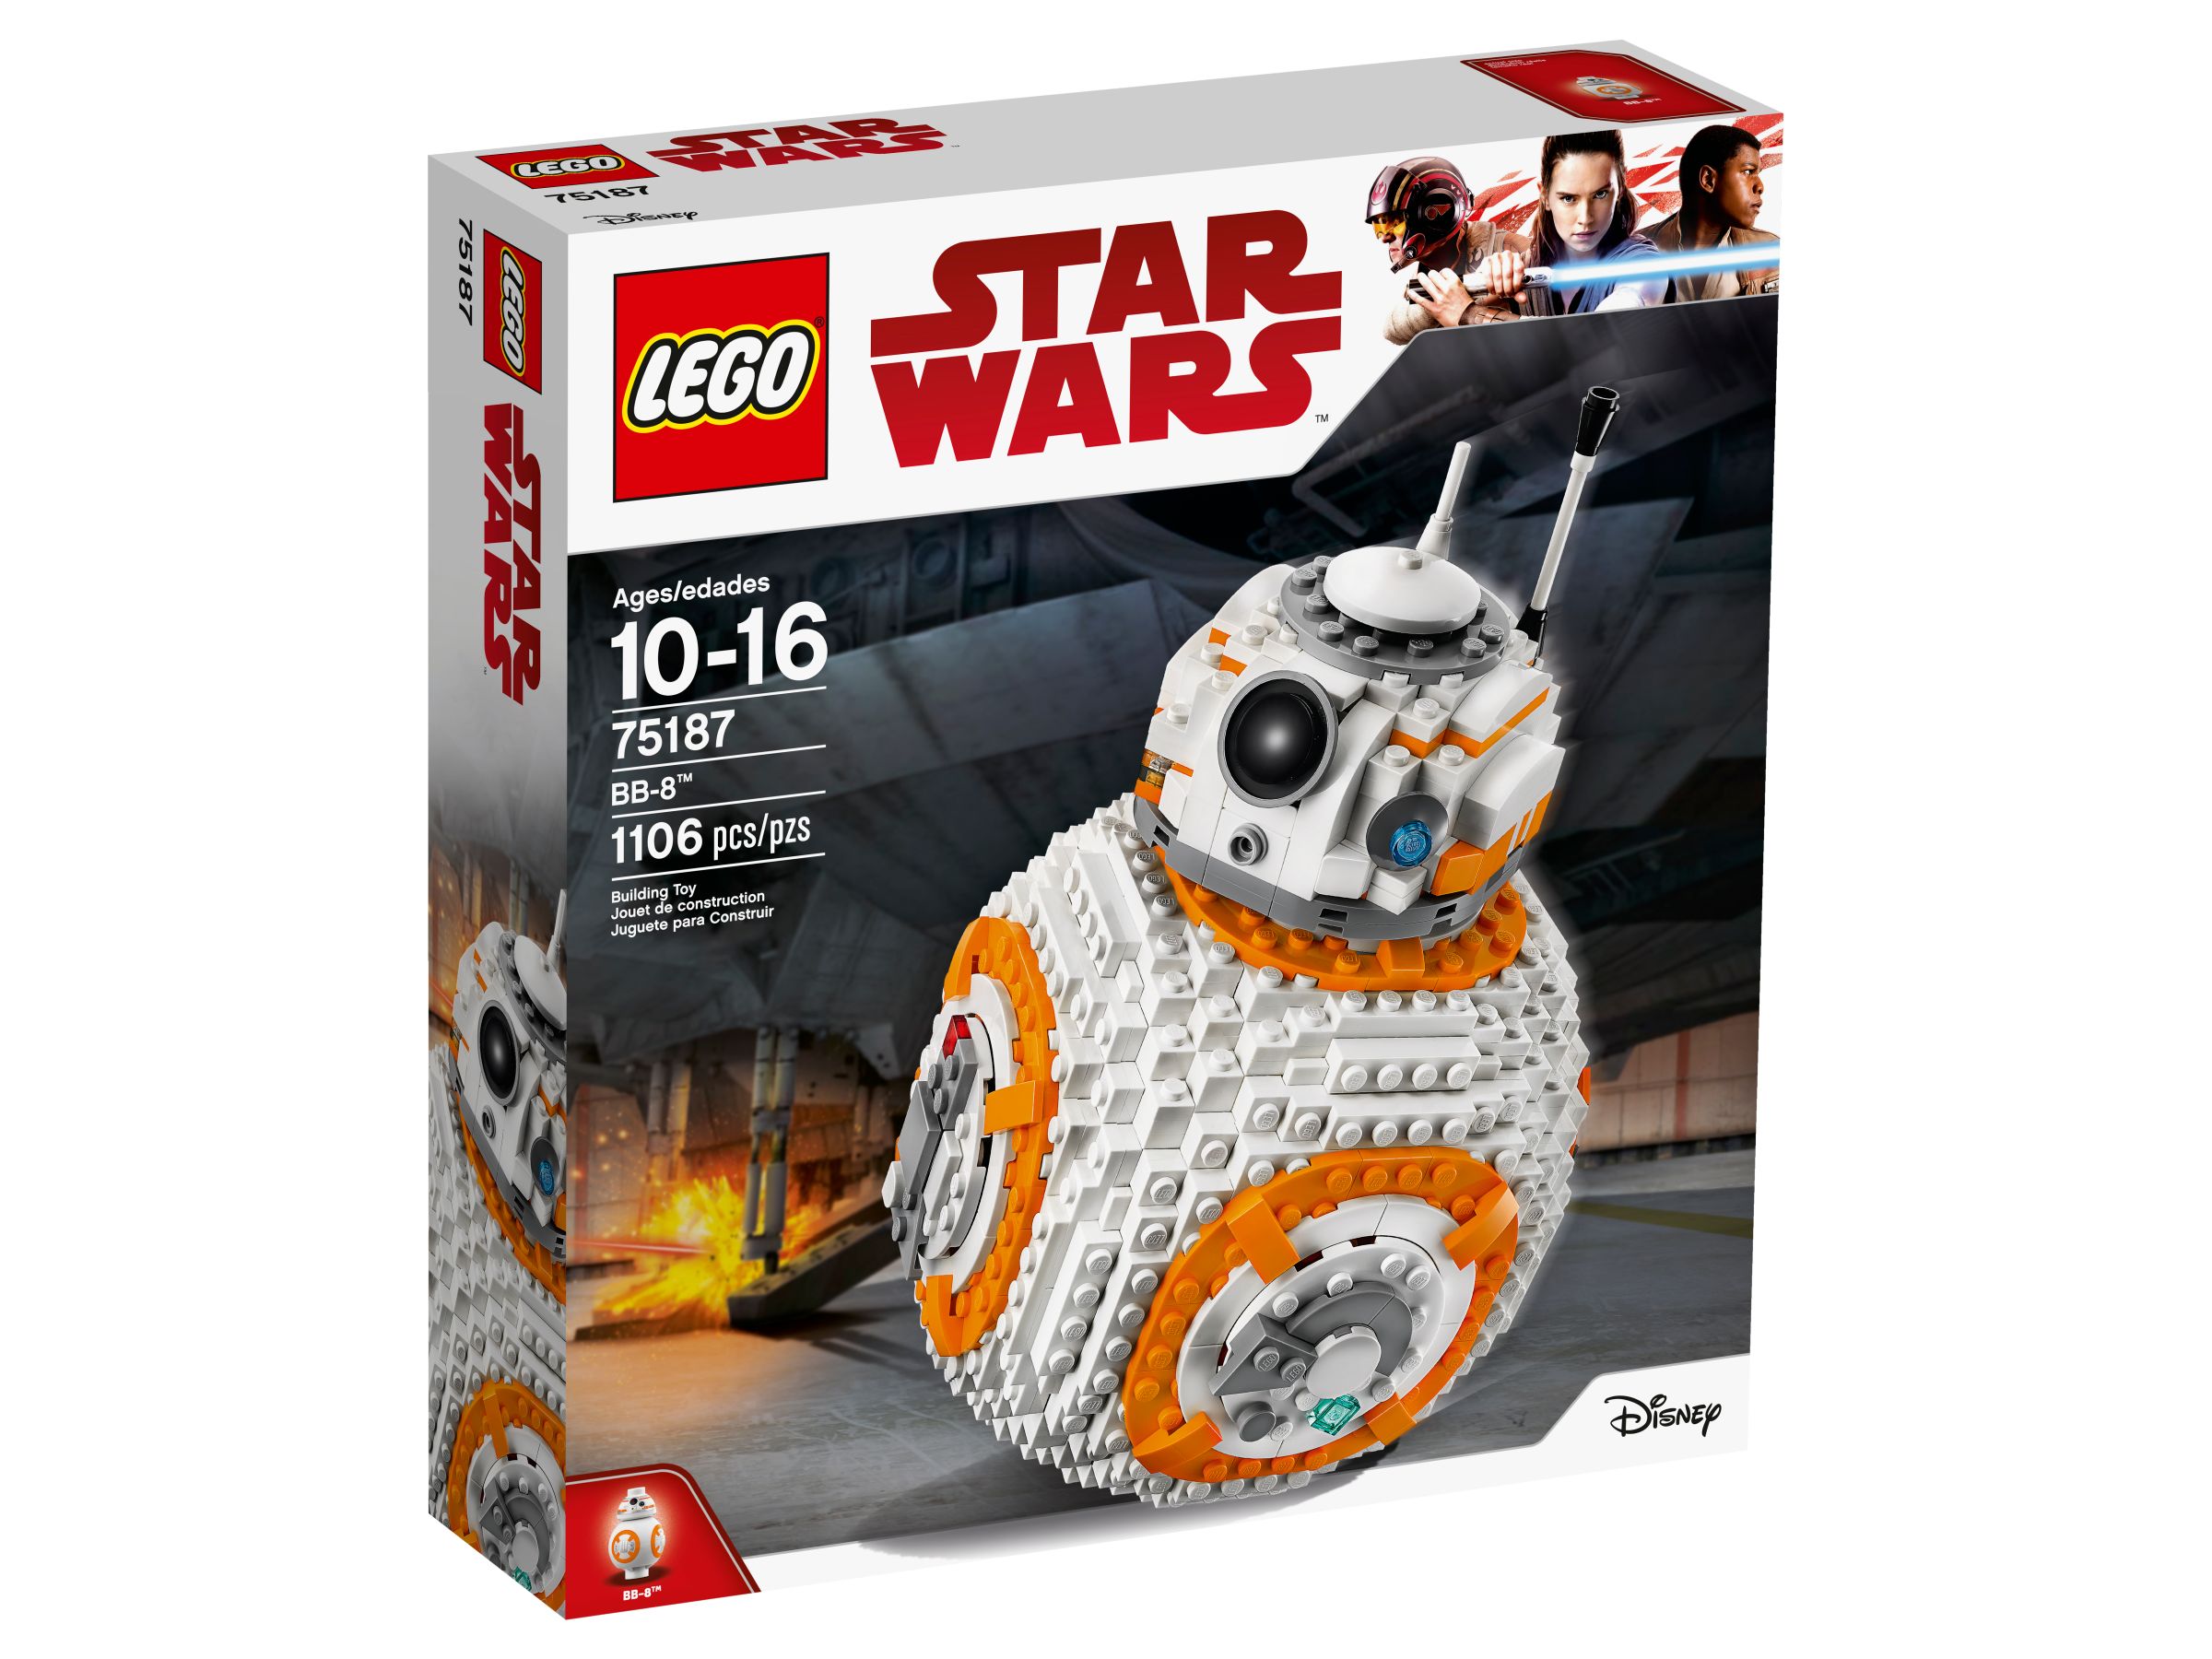 LEGO Star Wars 75187 BB-8™ LEGO_75187_alt1.jpg